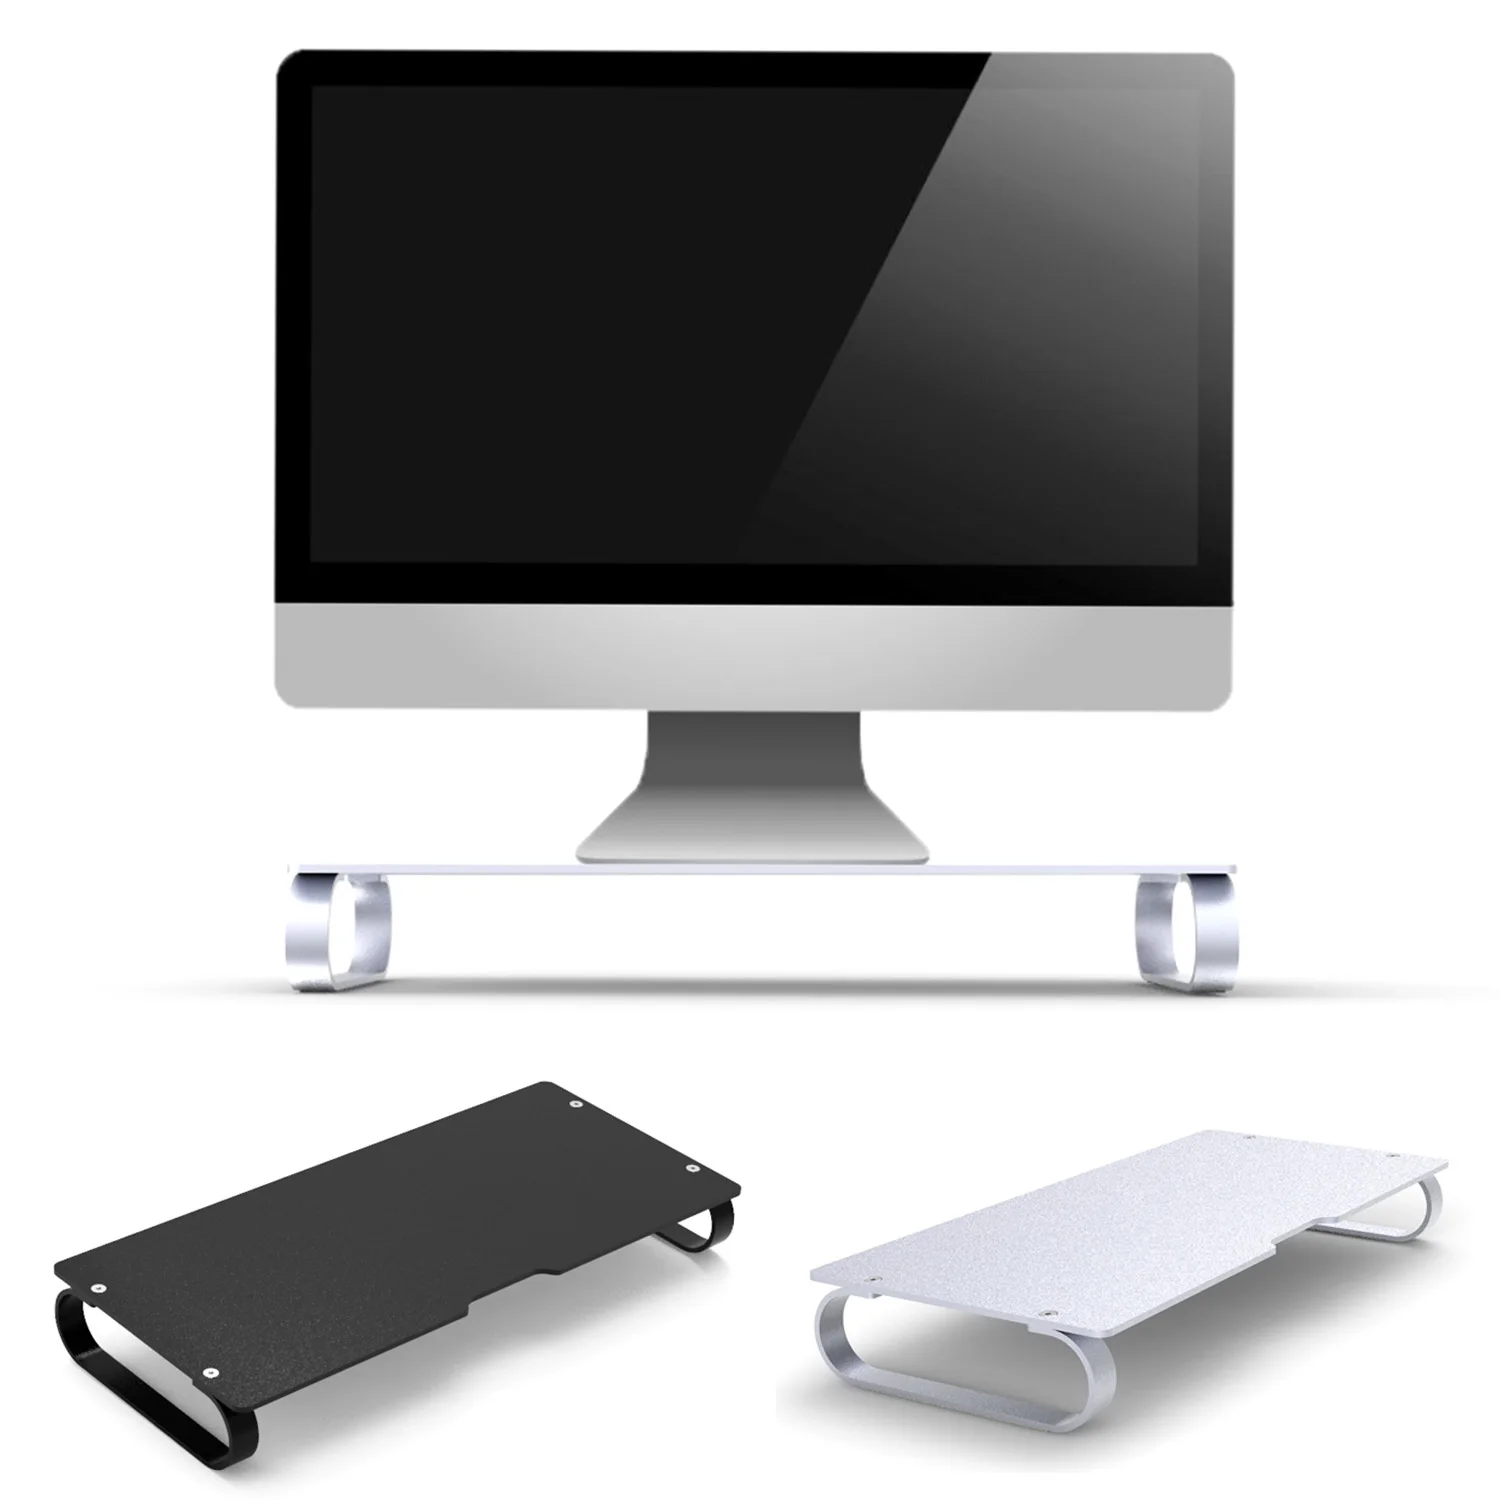 Besegad алюминиевый сплав компьютерный ноутбук Монитор подставка Док-станция стояк стол органайзер универсальный для Apple iMac MacBook проектор